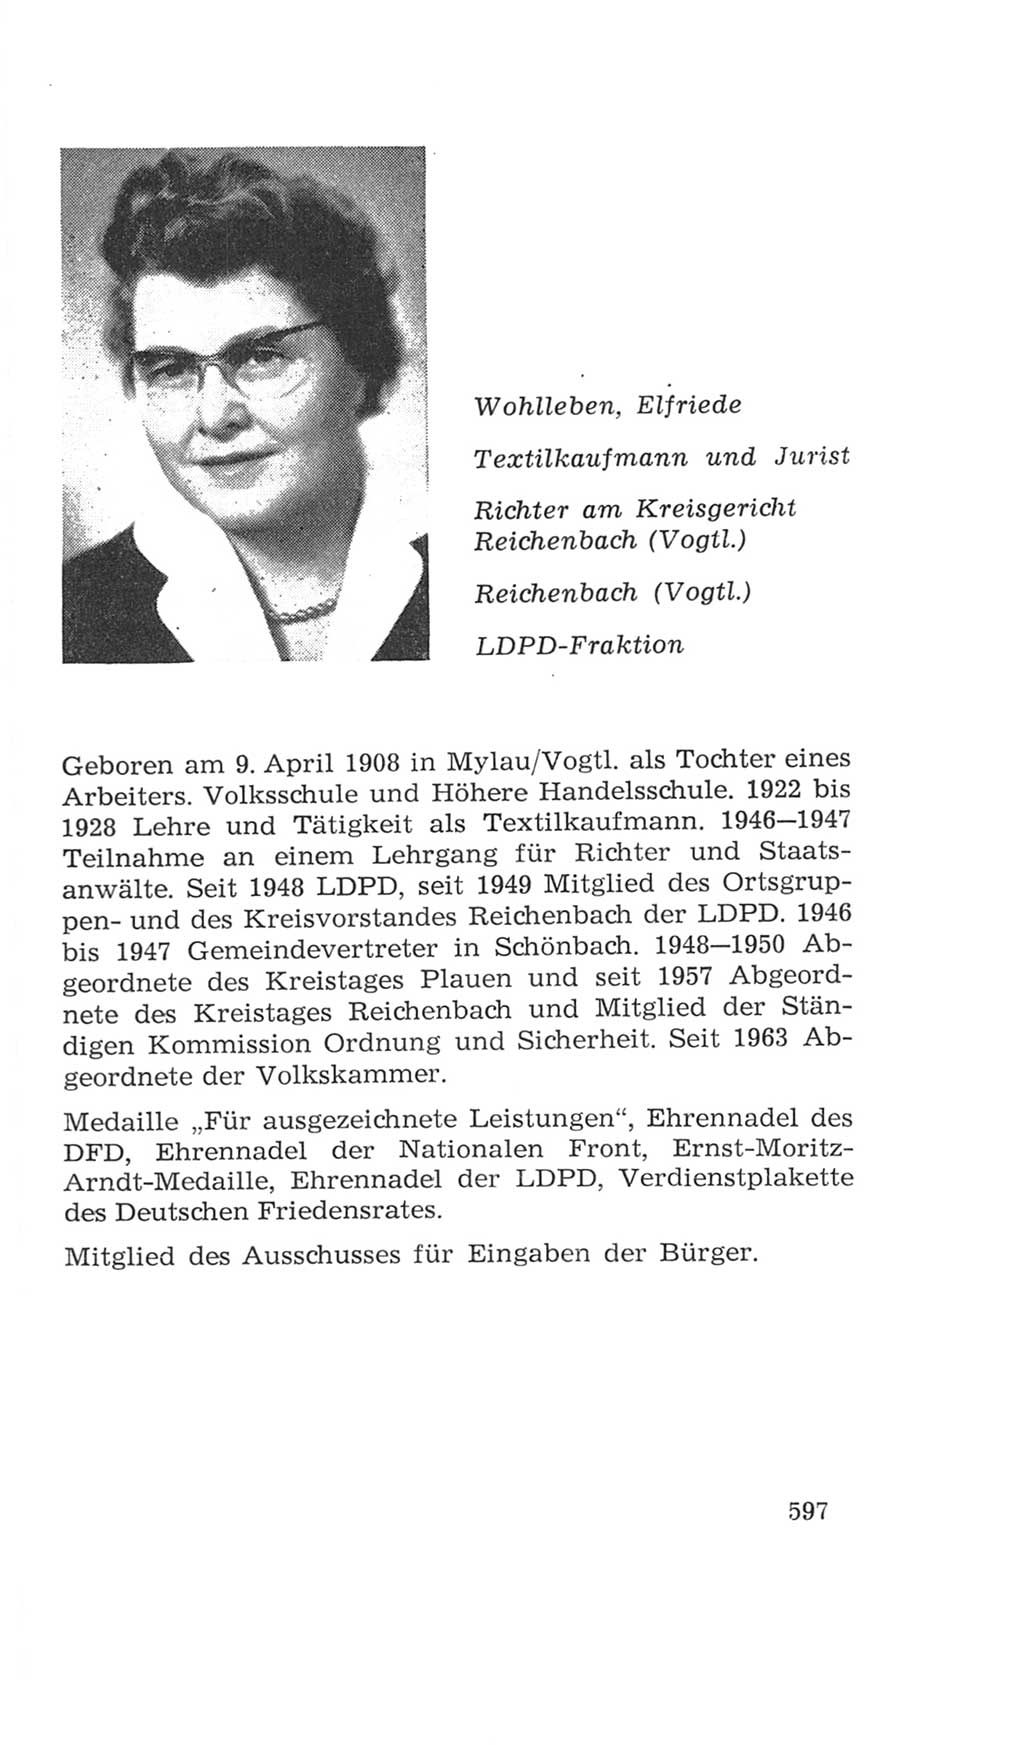 Volkskammer (VK) der Deutschen Demokratischen Republik (DDR), 4. Wahlperiode 1963-1967, Seite 597 (VK. DDR 4. WP. 1963-1967, S. 597)